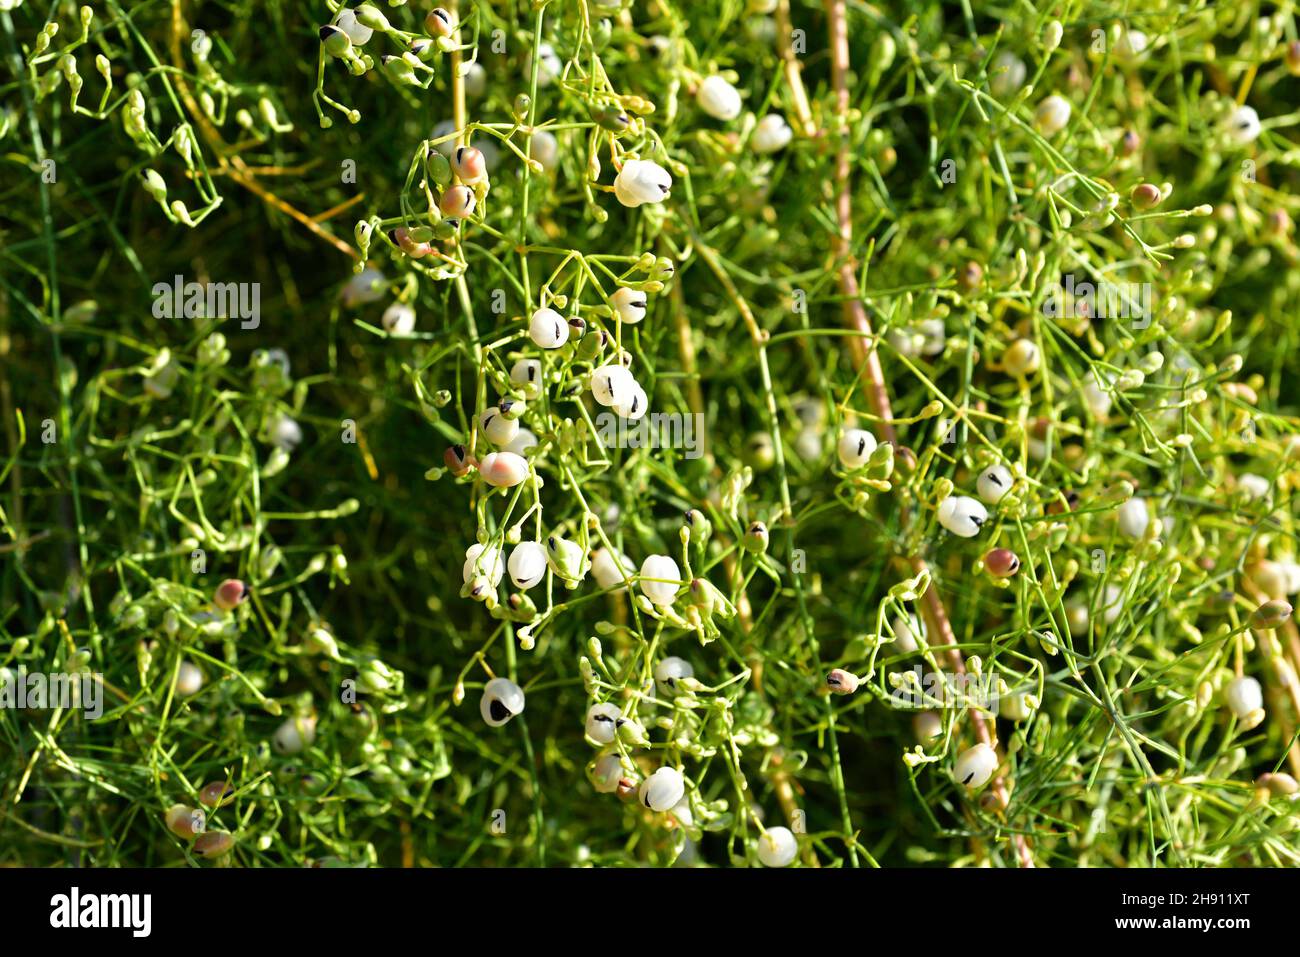 El horrstail del arbusto (Ephedra foliata o Ephedra ciliata) es un arbusto nativo al norte de África y al oeste de Asia. Foto de stock